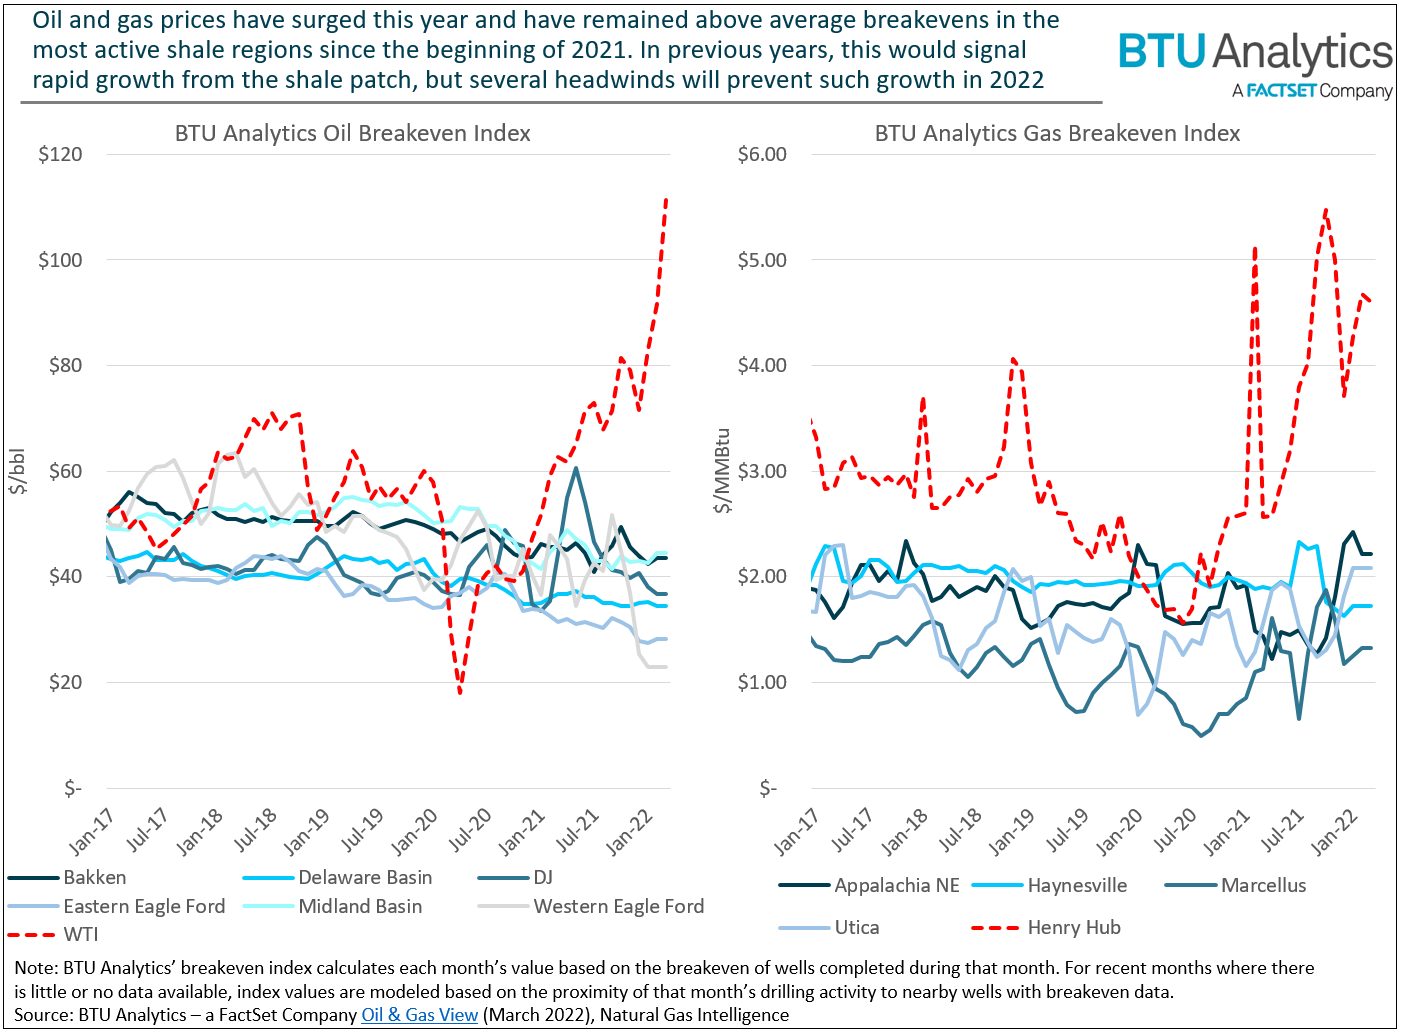 btu-analytics-oil-gas-breakeven-indexes